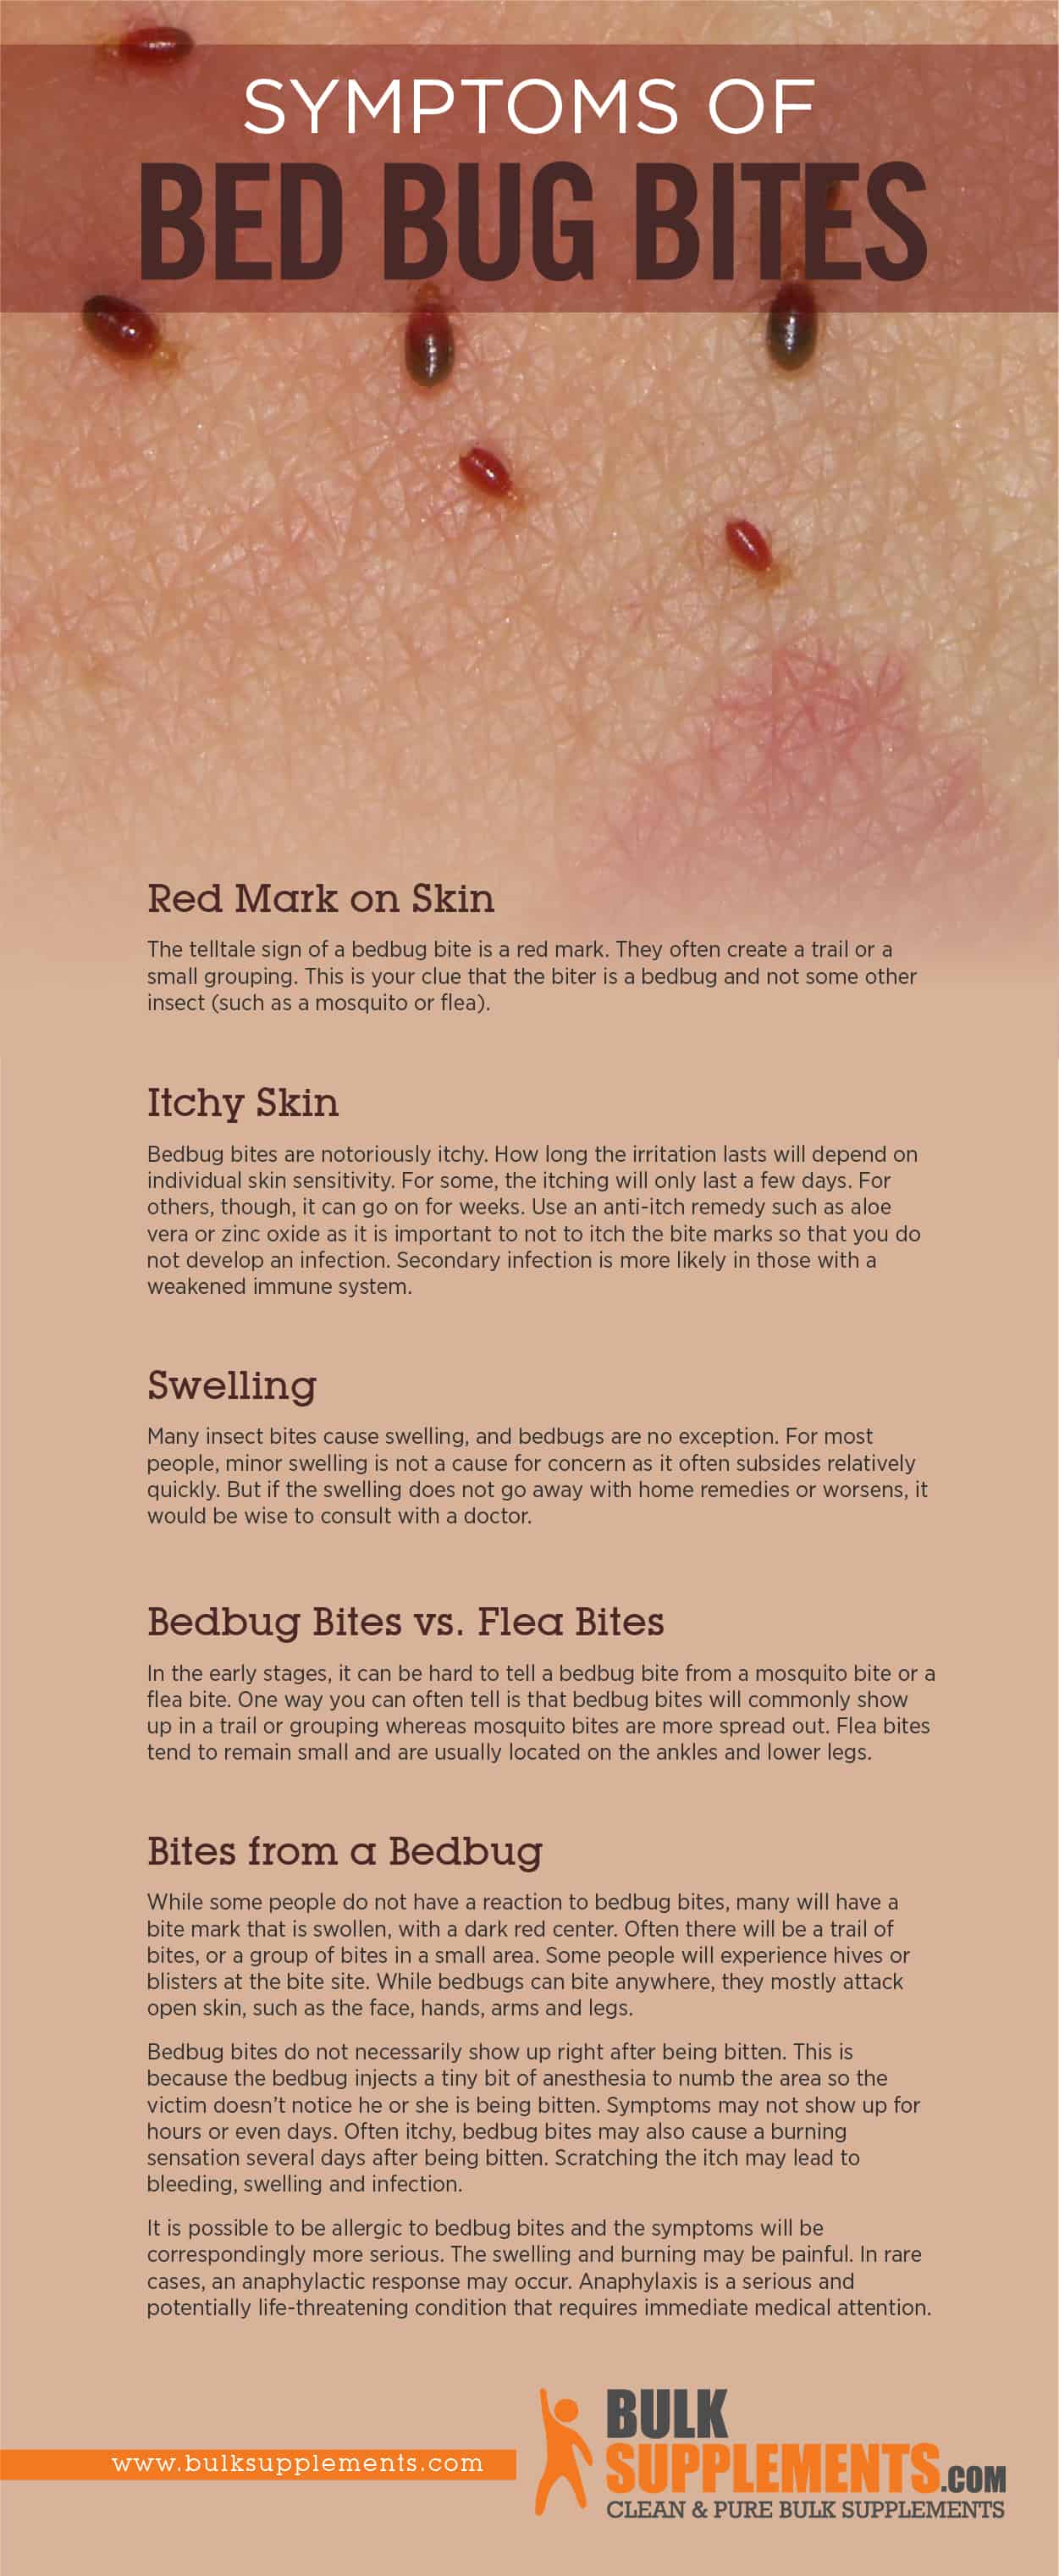 Bed Bug Bites Symptoms